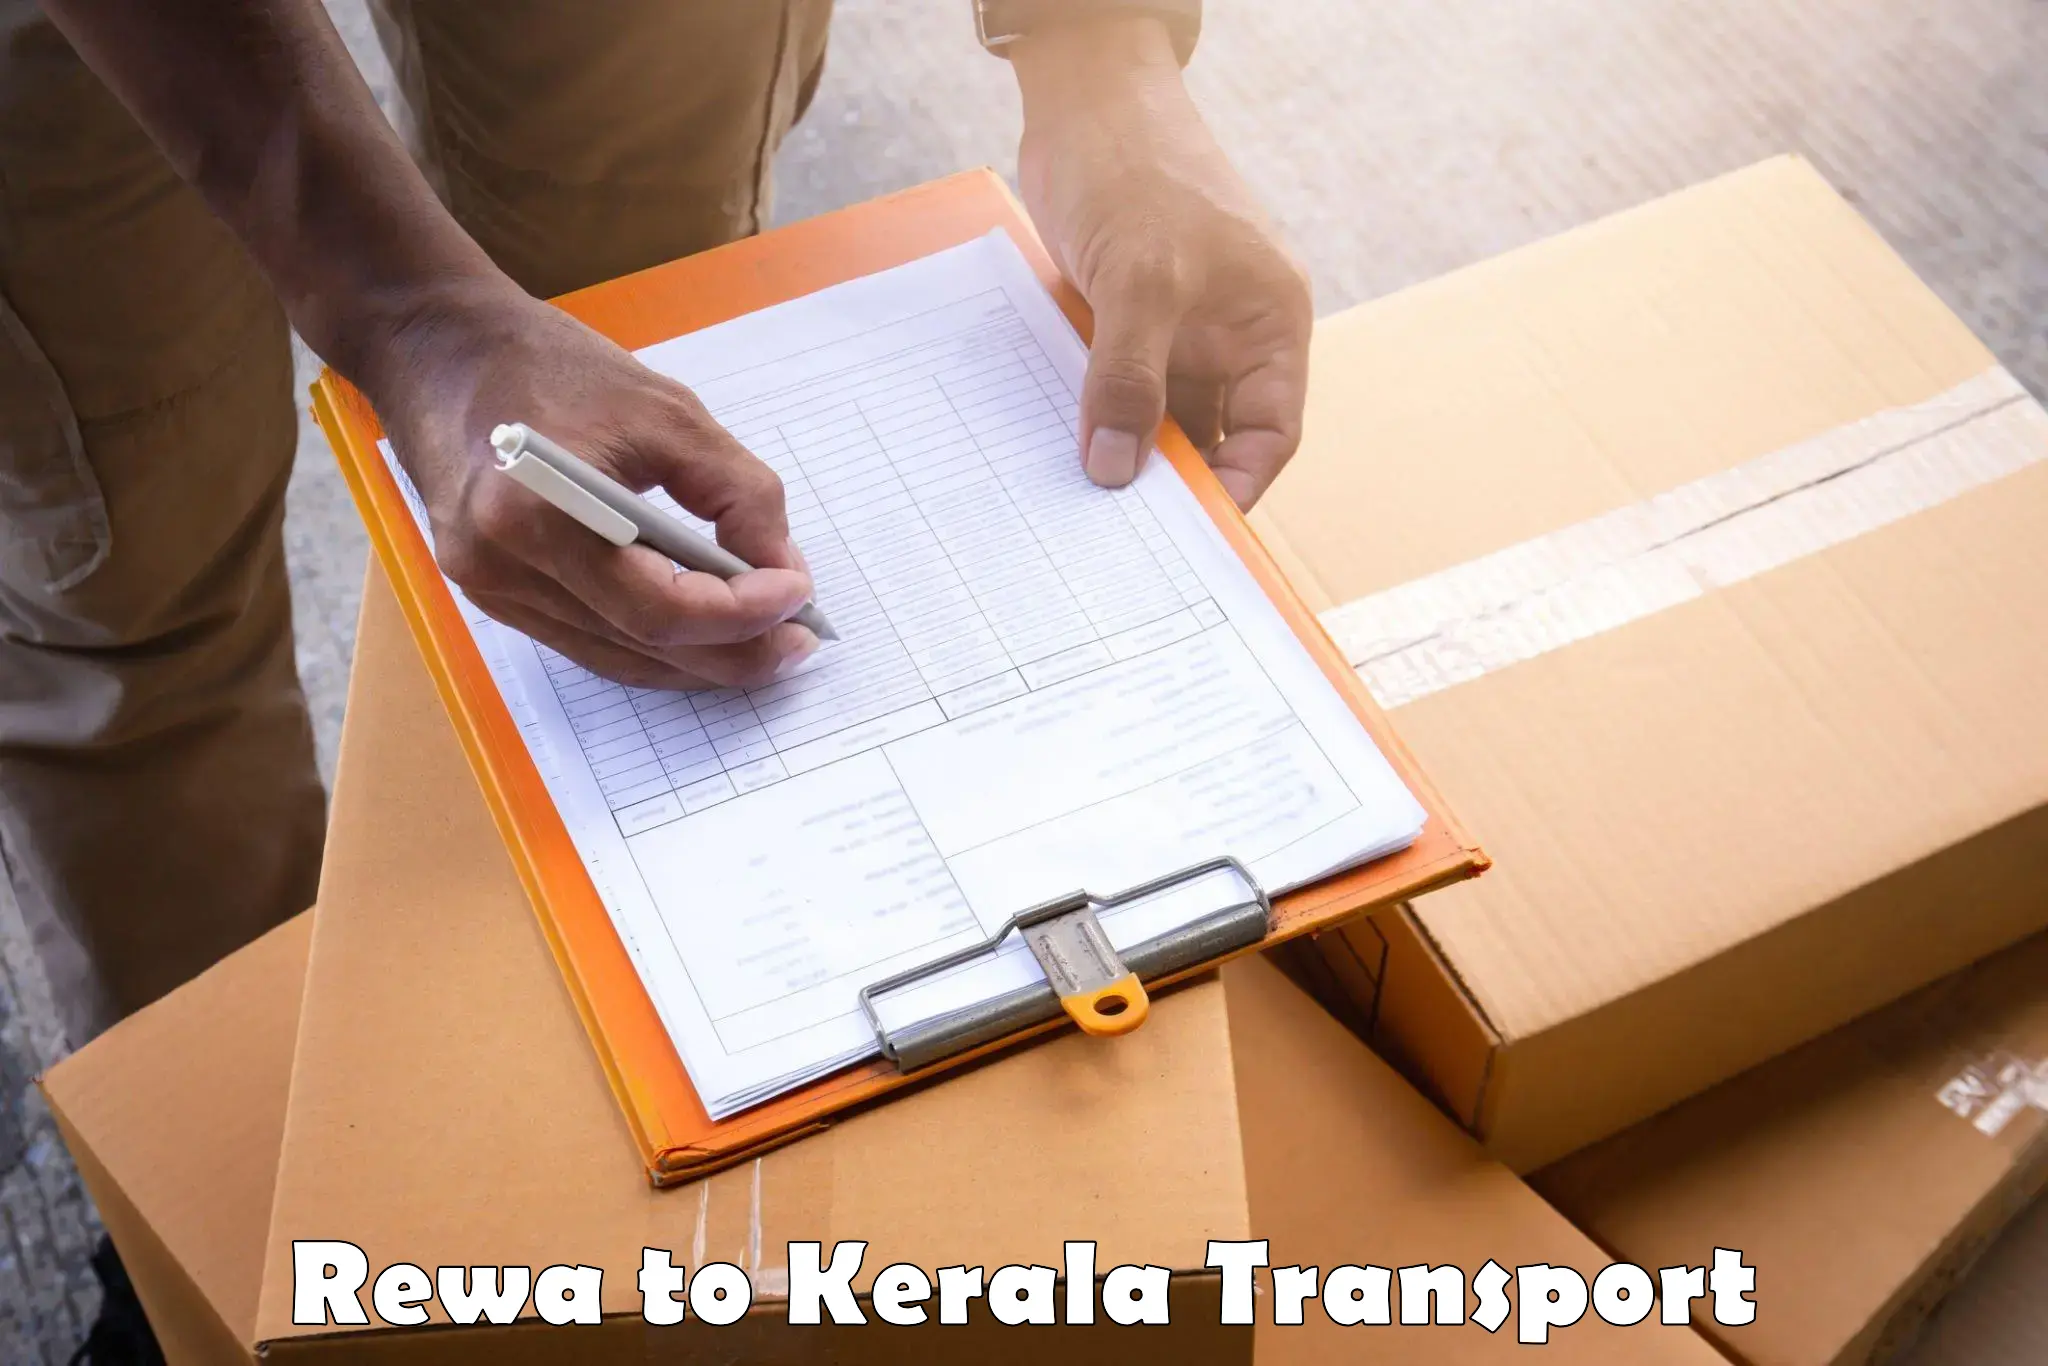 Nearest transport service Rewa to Panayathamparamba